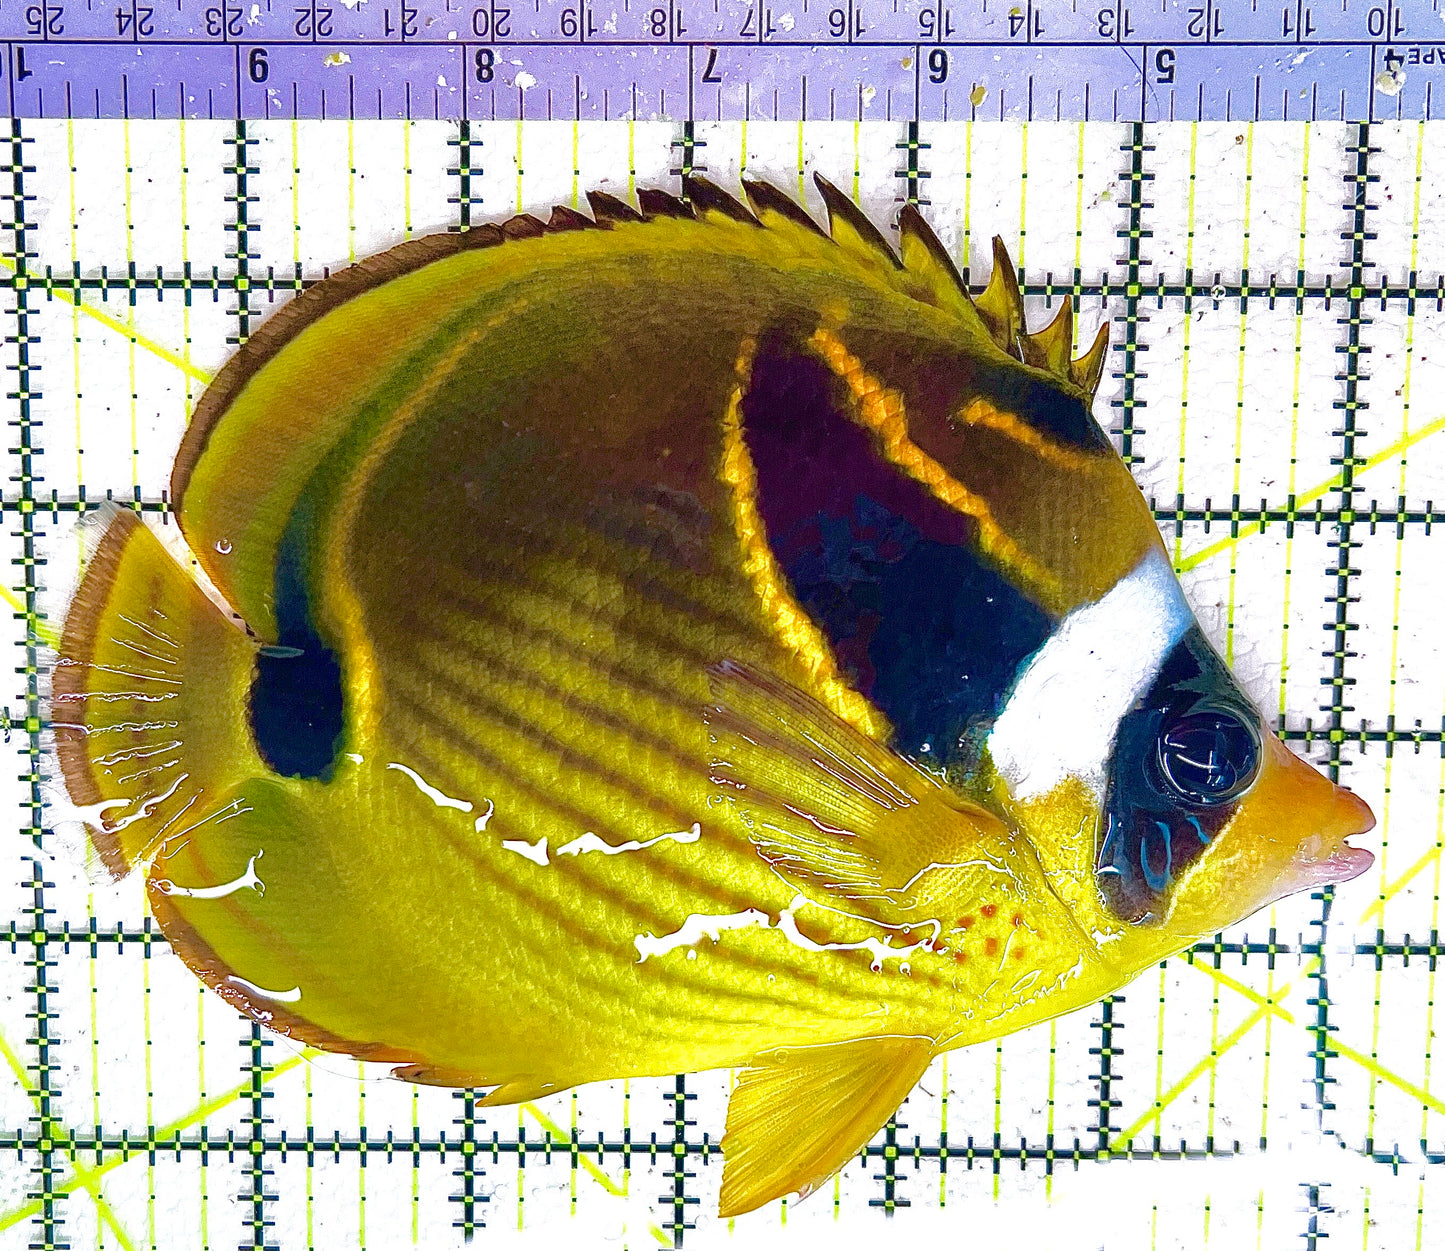 Raccoon Butterflyfish RB042801 WYSIWYG Size: XL 6" approx